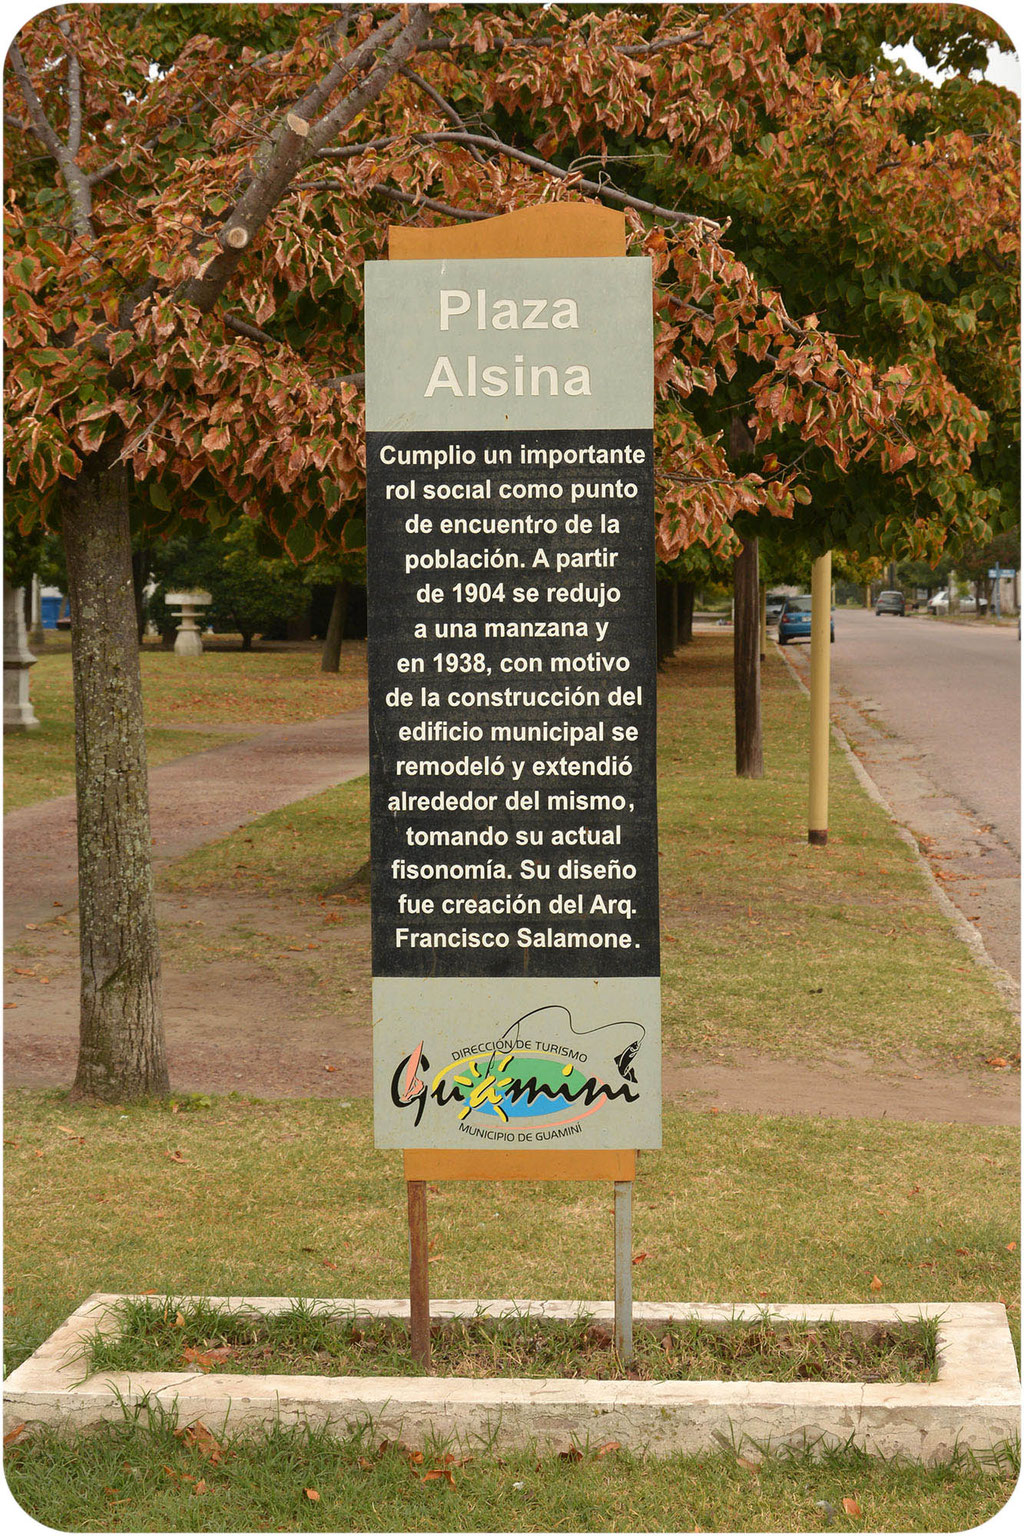 Plaza Alsina